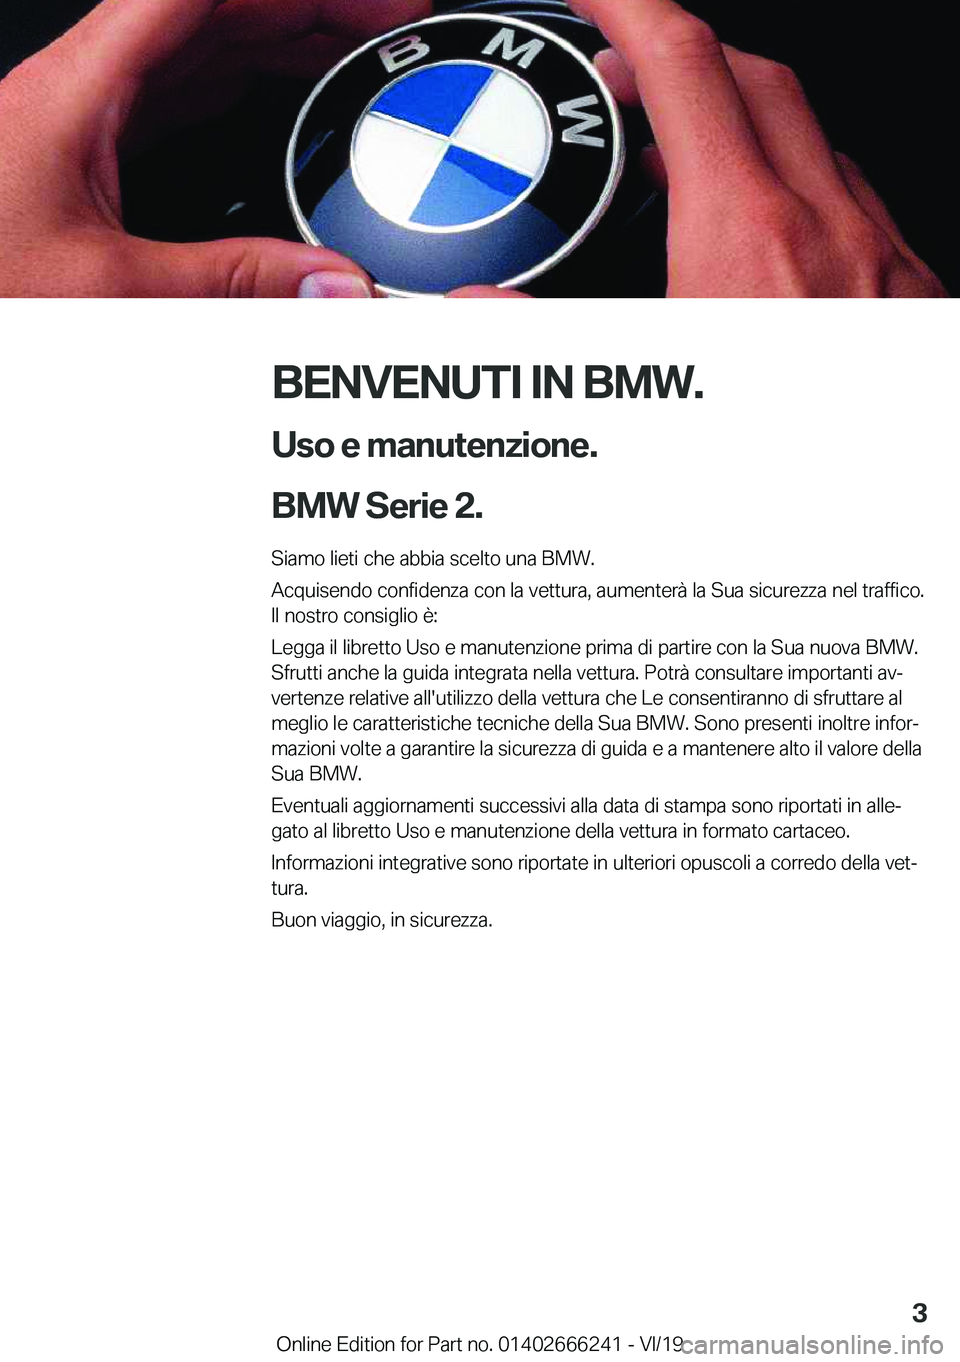 BMW 2 SERIES COUPE 2020  Libretti Di Uso E manutenzione (in Italian) �B�E�N�V�E�N�U�T�I��I�N��B�M�W�.�U�s�o��e��m�a�n�u�t�e�n�z�i�o�n�e�.
�B�M�W��S�e�r�i�e��2�.�
�S�i�a�m�o��l�i�e�t�i��c�h�e��a�b�b�i�a��s�c�e�l�t�o��u�n�a��B�M�W�. �A�c�q�u�i�s�e�n�d�o��c�